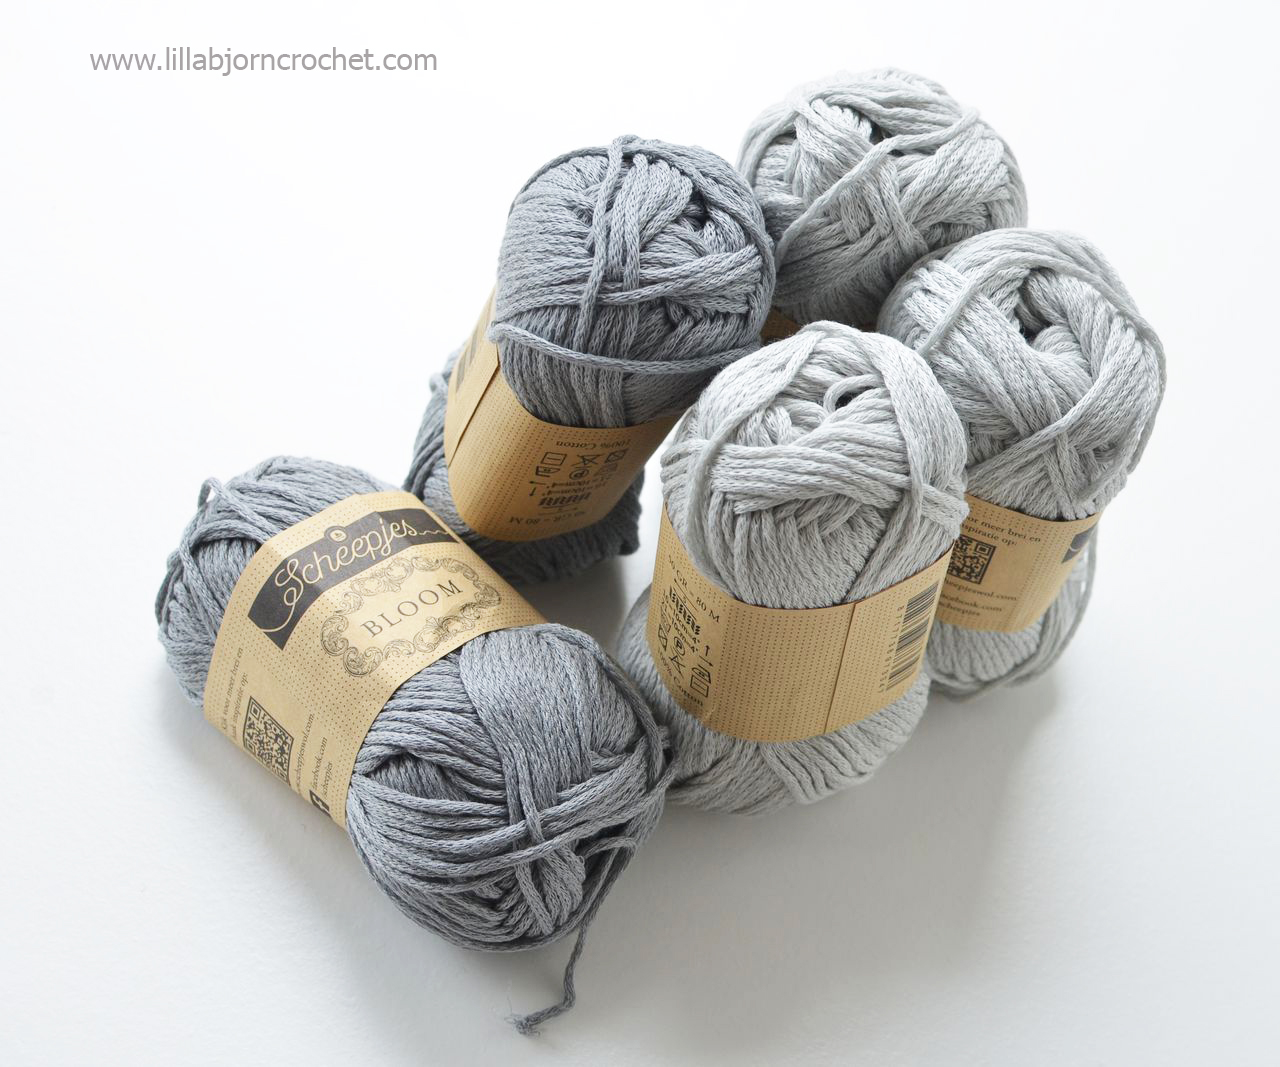 Bloom from Scheepjes - yarn review by Lilla Bjorn Crochet